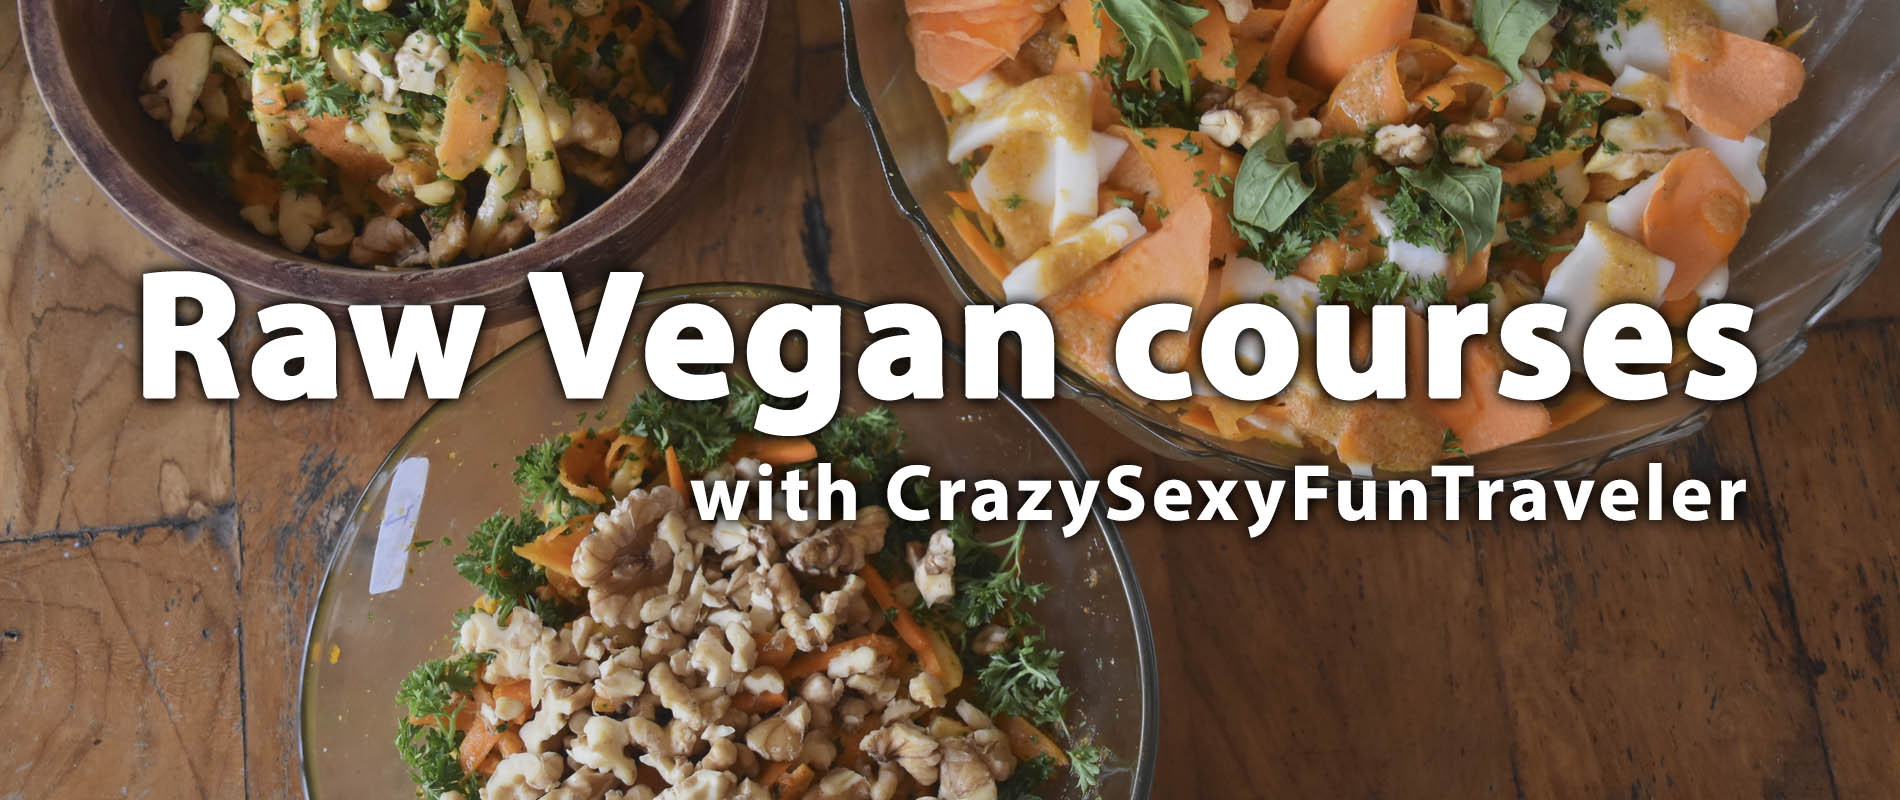 raw vegan courses with crazysexyfuntraveler